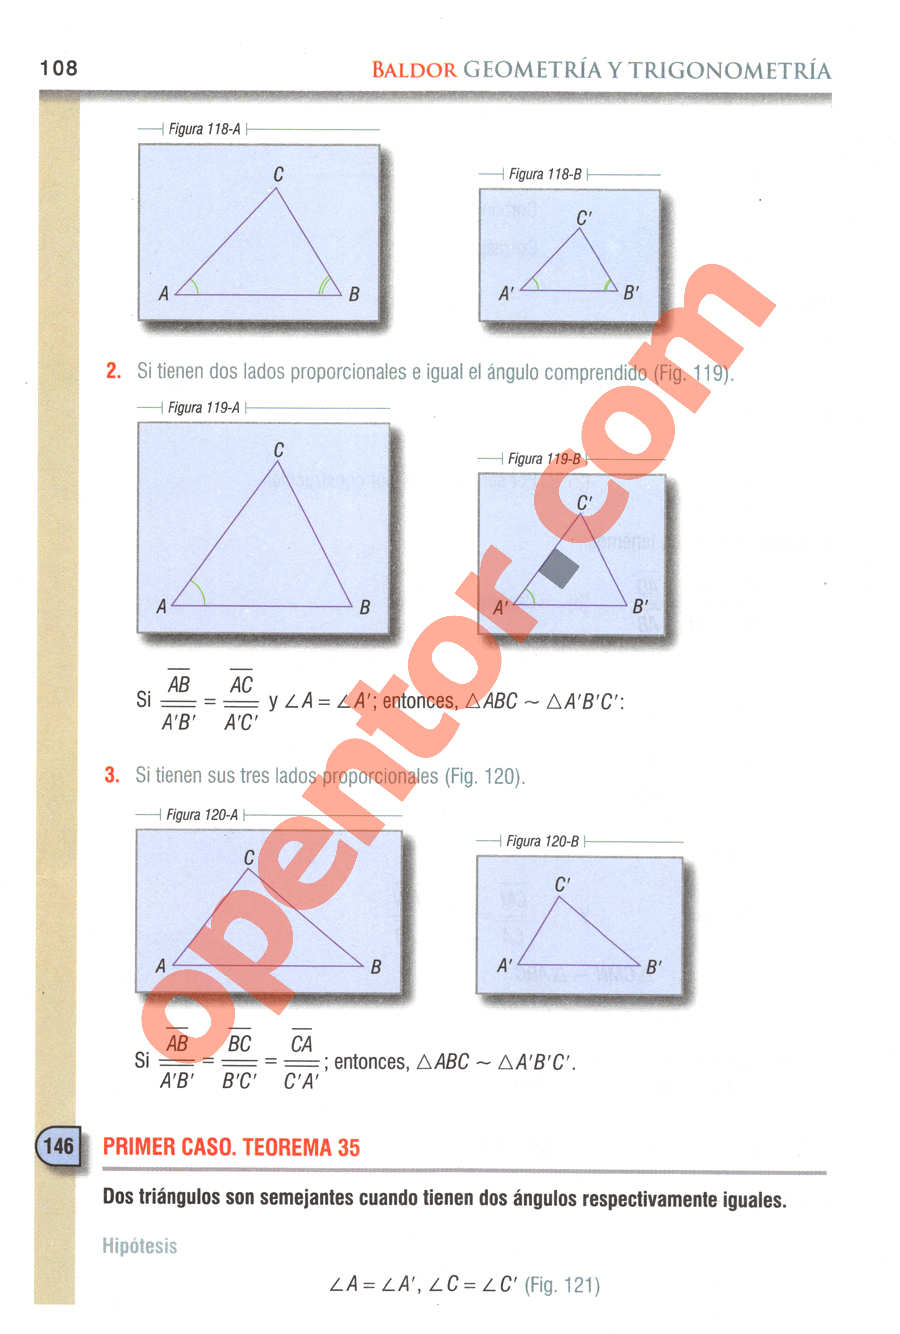 Geometría y Trigonometría de Baldor - Página 108